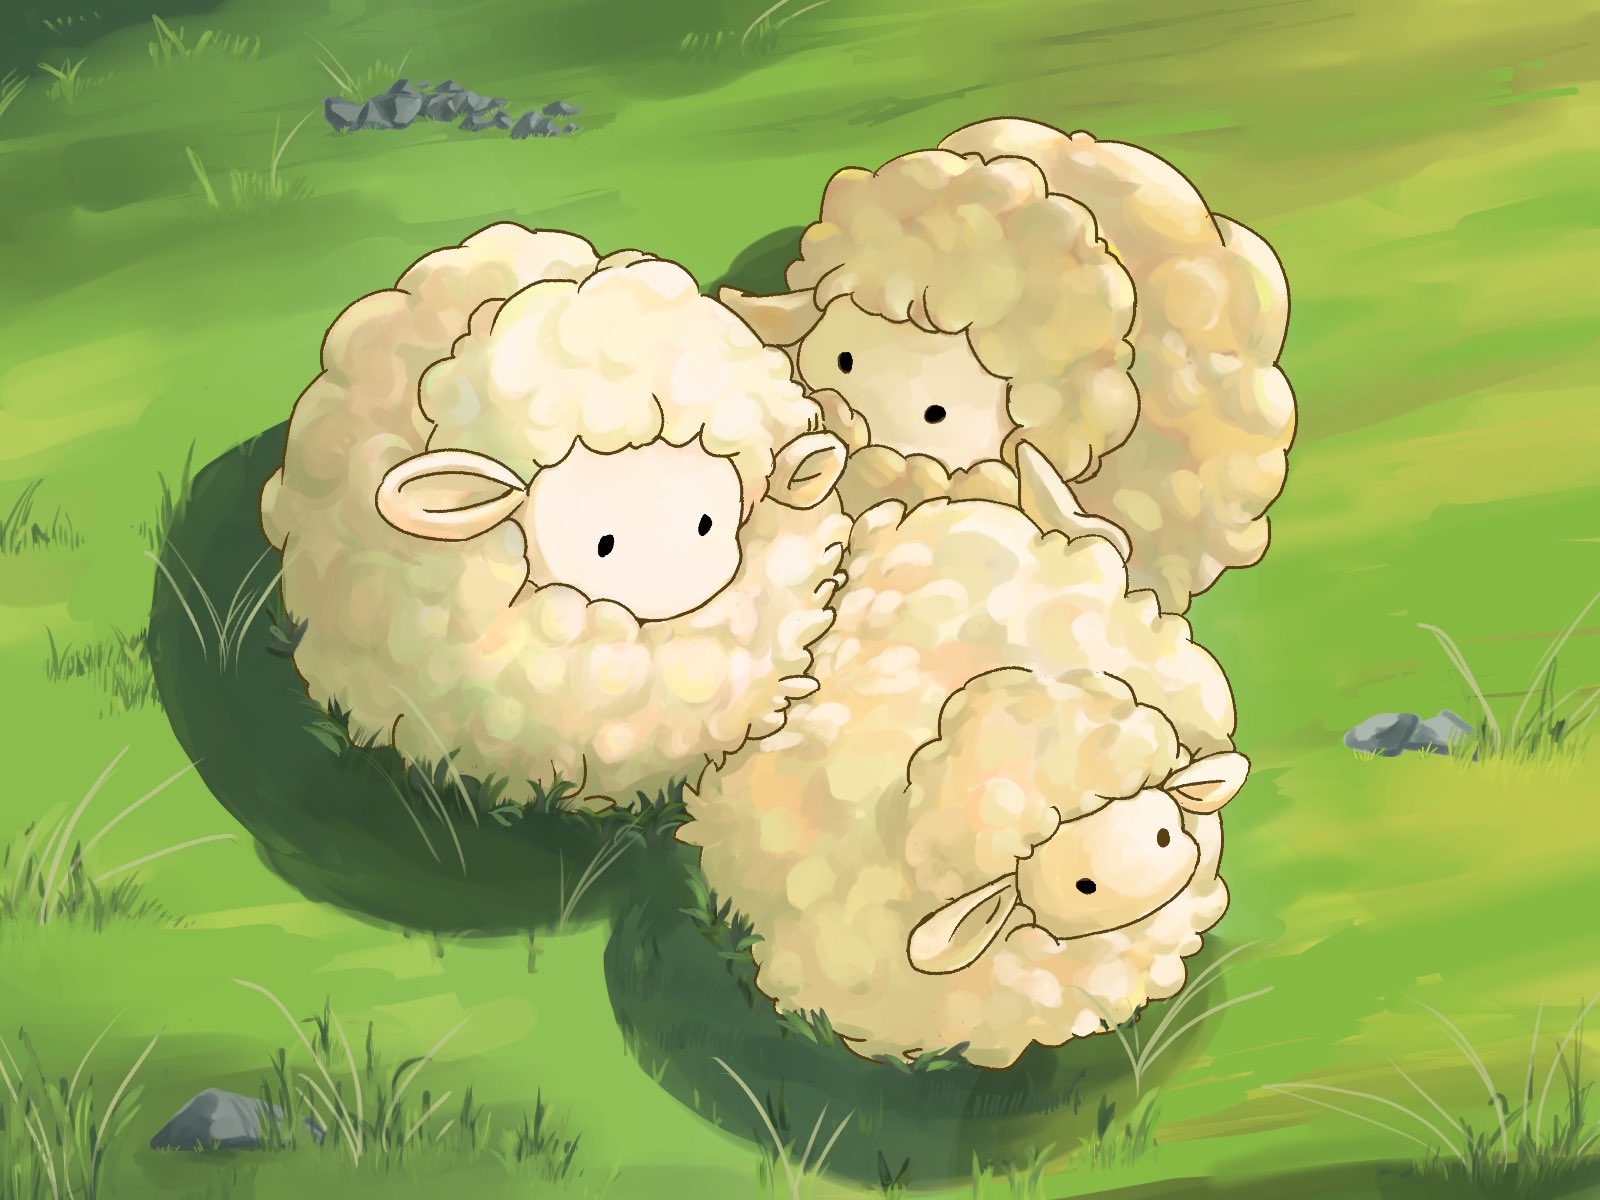 日野ま Hinoma Kooooona この羊さんめっちゃ可愛いですね 思わずイラストを描くくらい気に入ってしまいました 私もニュージーランドに行くことがあったら お土産に買っていきます T Co 0ruxs3qyo0 Twitter